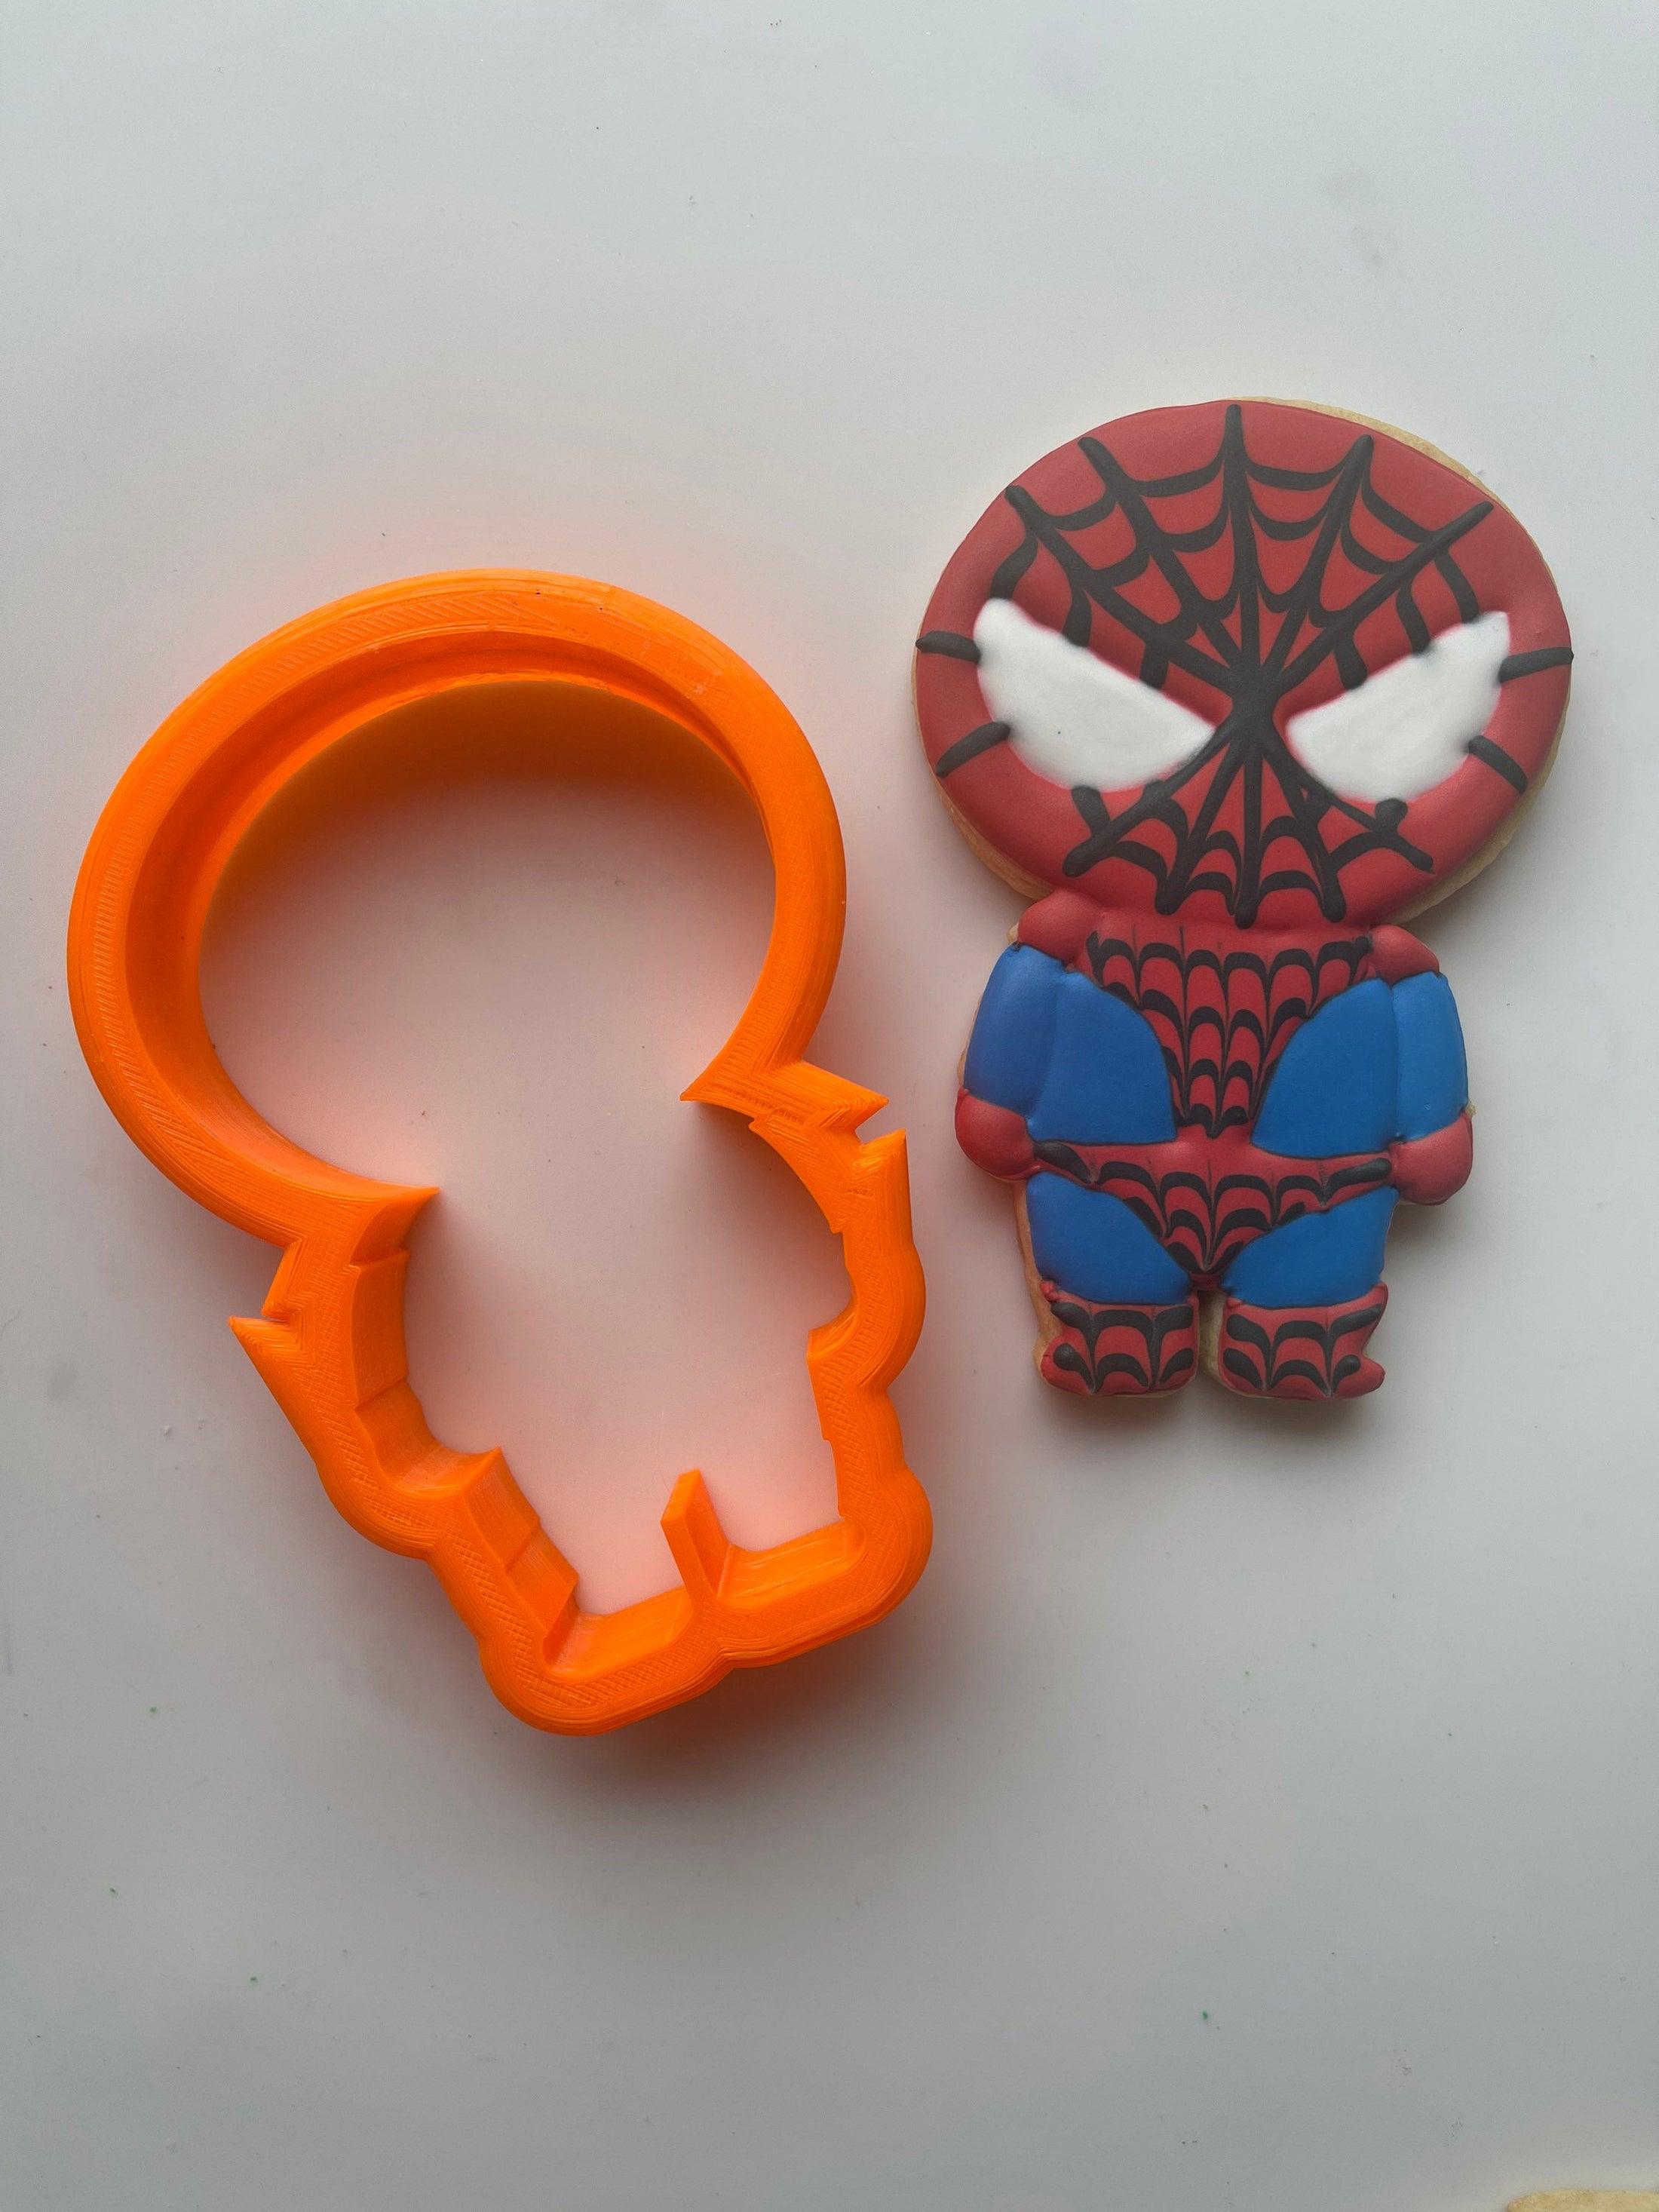 Spider Man cookie cutter